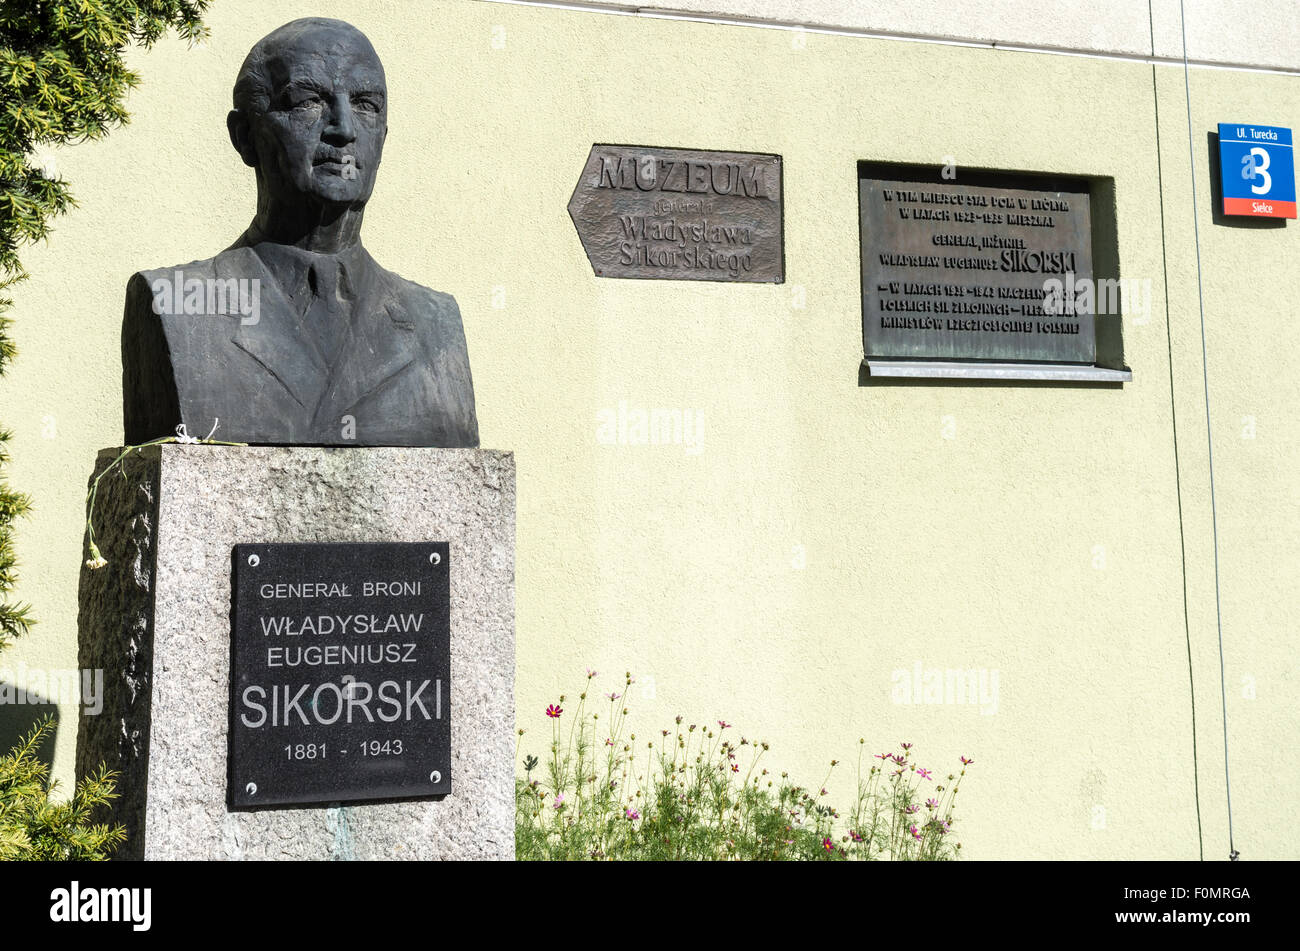 General Władysław Sikorski bust and museum, Warsaw, Poland Stock Photo